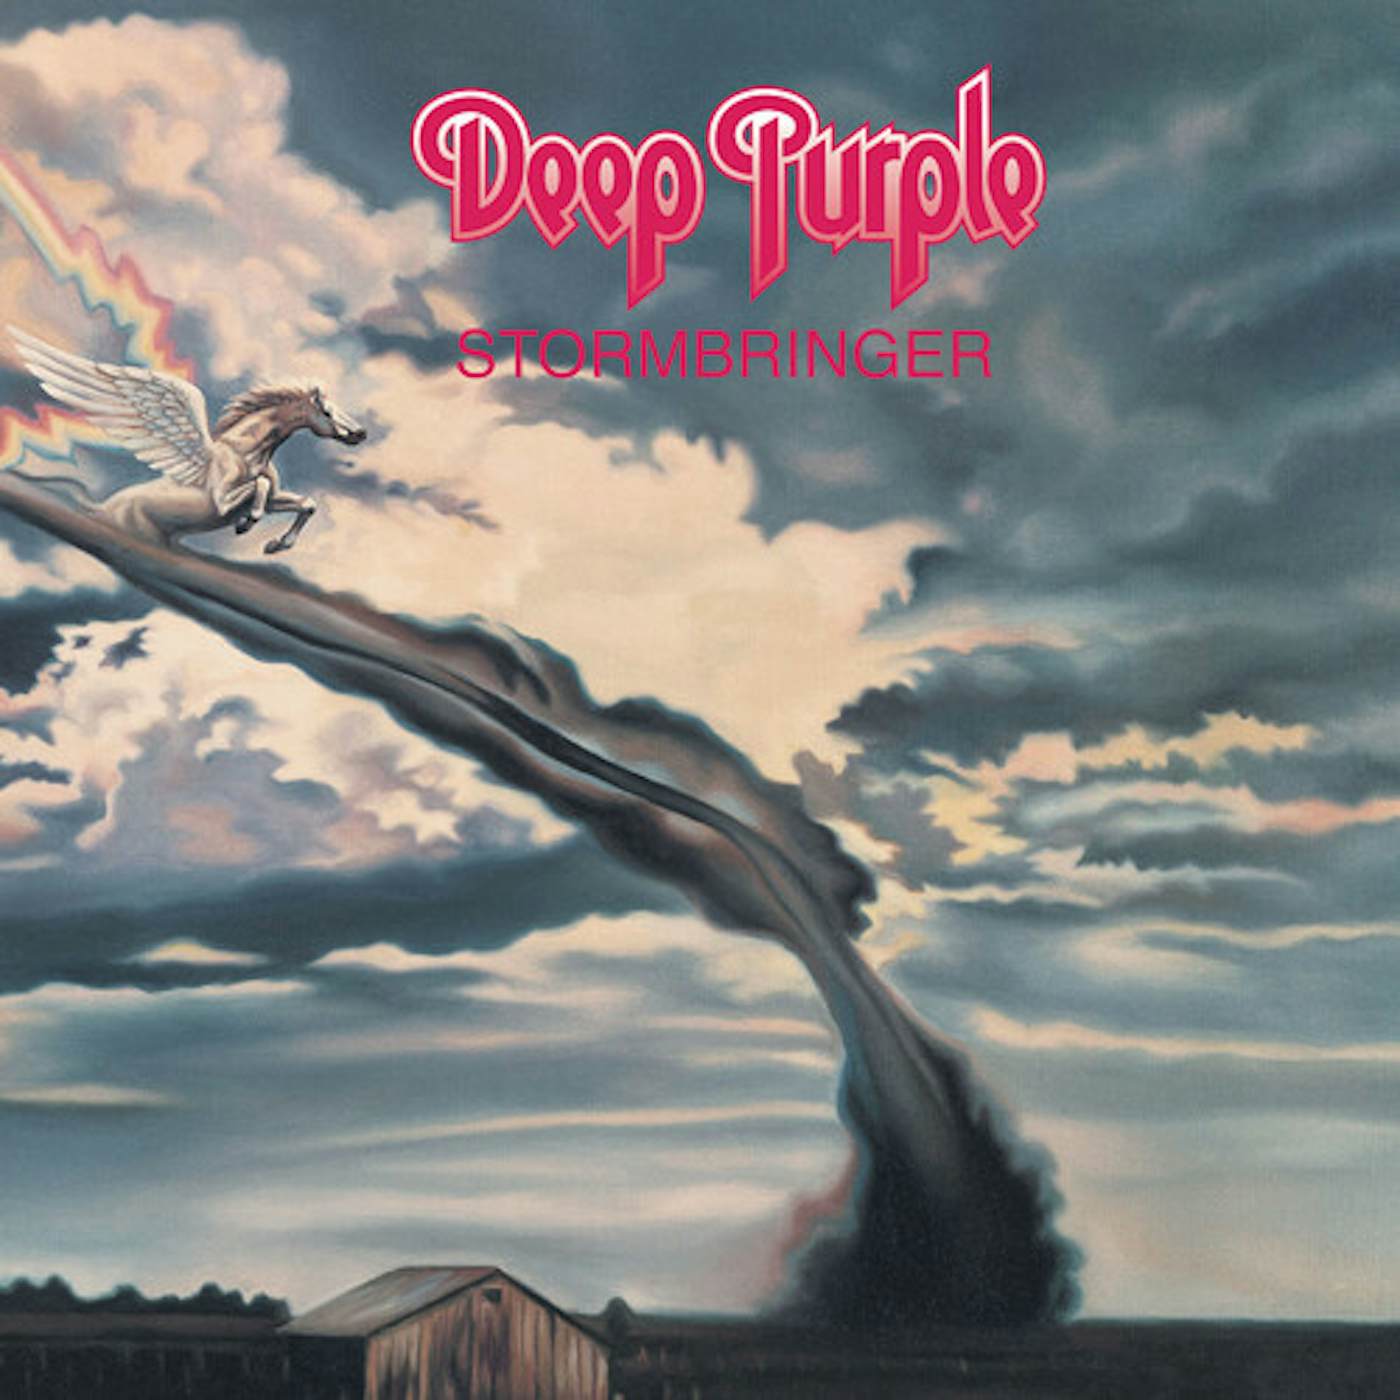 Deep Purple Stormbringer Vinyl Record